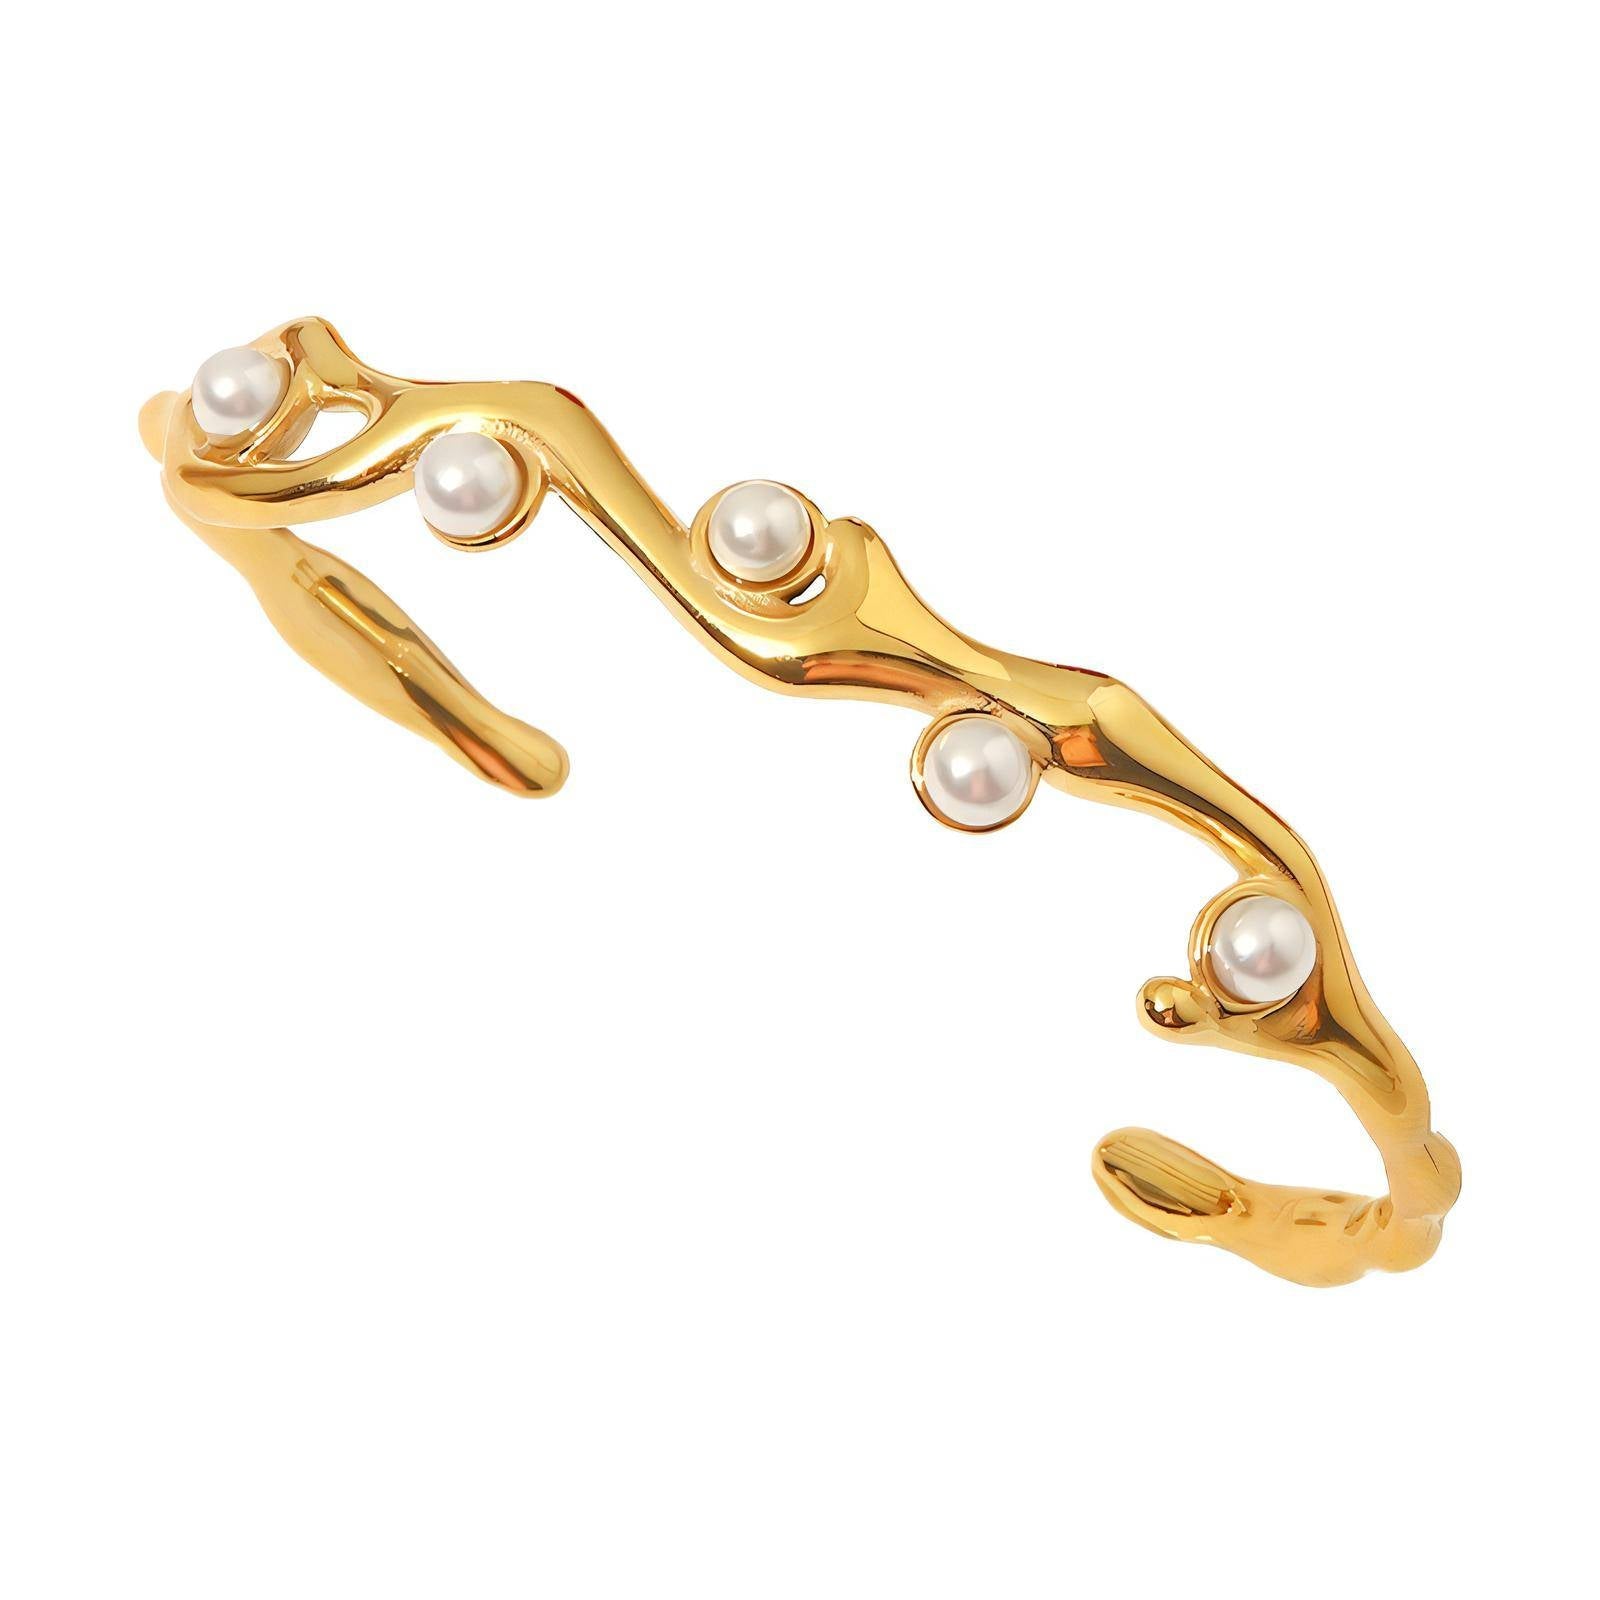 Diane 18k gold plated stainless steel pearl bracelet - Akalia